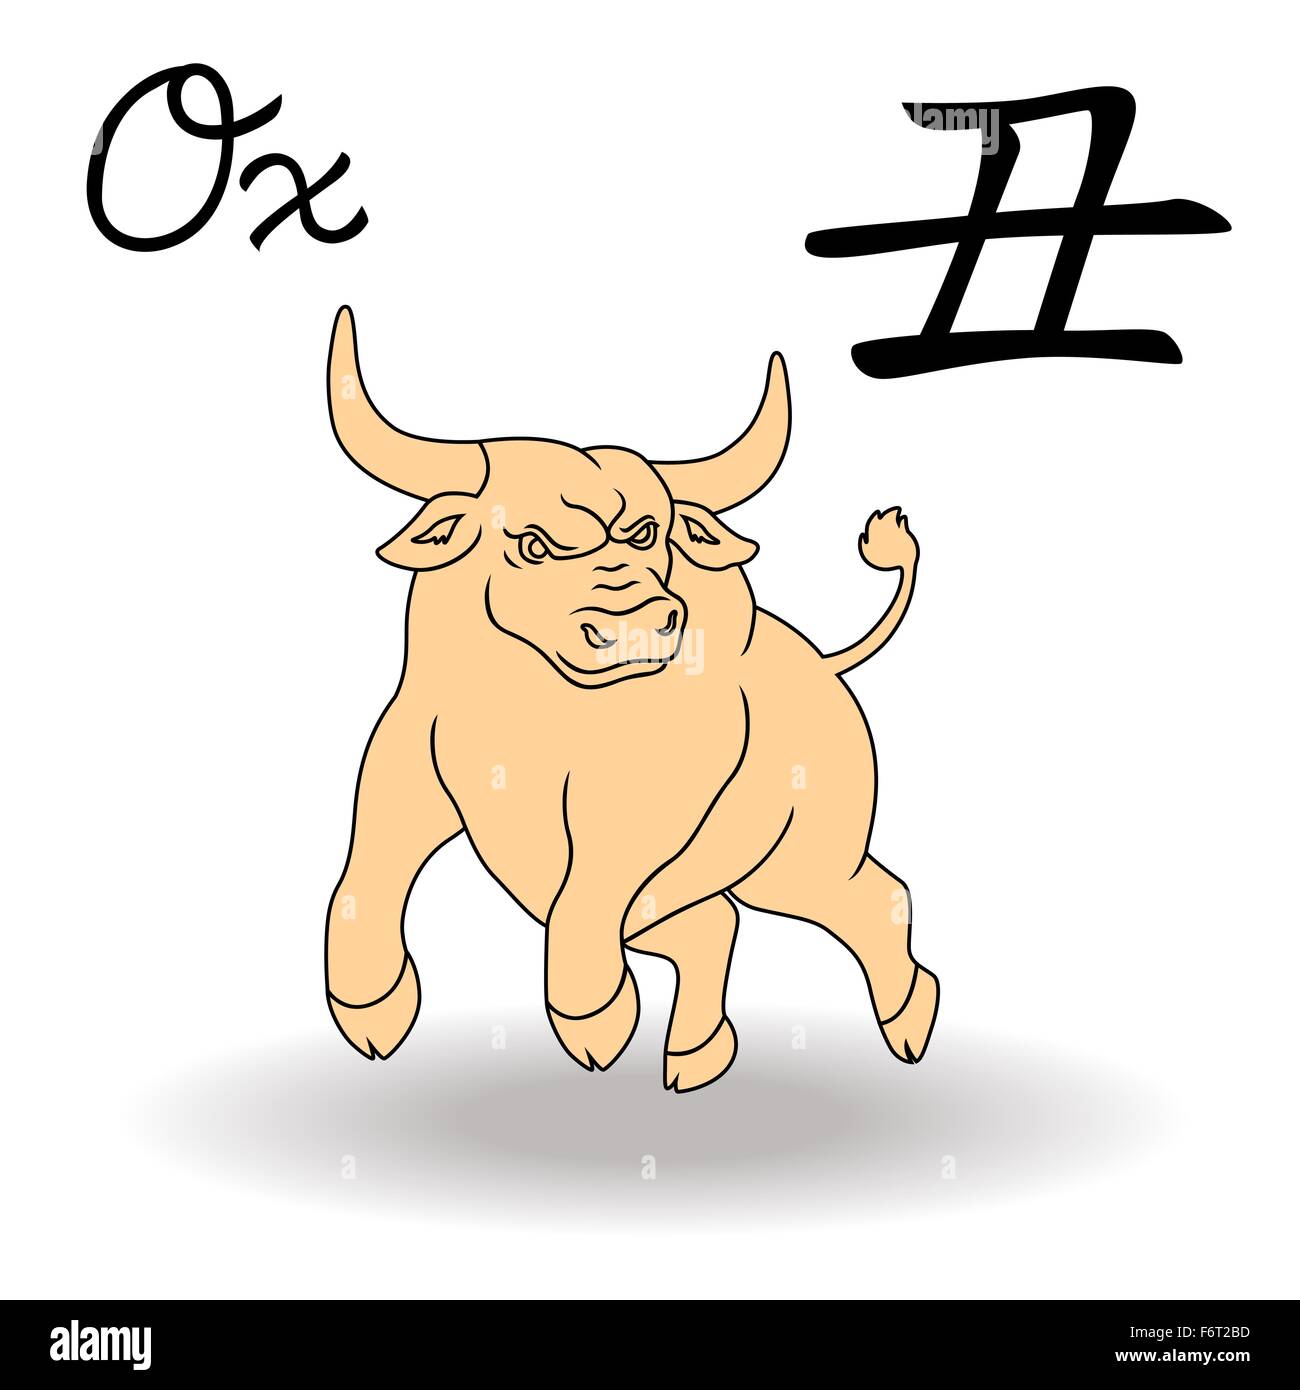 L'Est de signe du zodiaque taureau, symbole de la nouvelle année dans le calendrier chinois, à la main des illustrations vectorielles isolé sur fond blanc Illustration de Vecteur